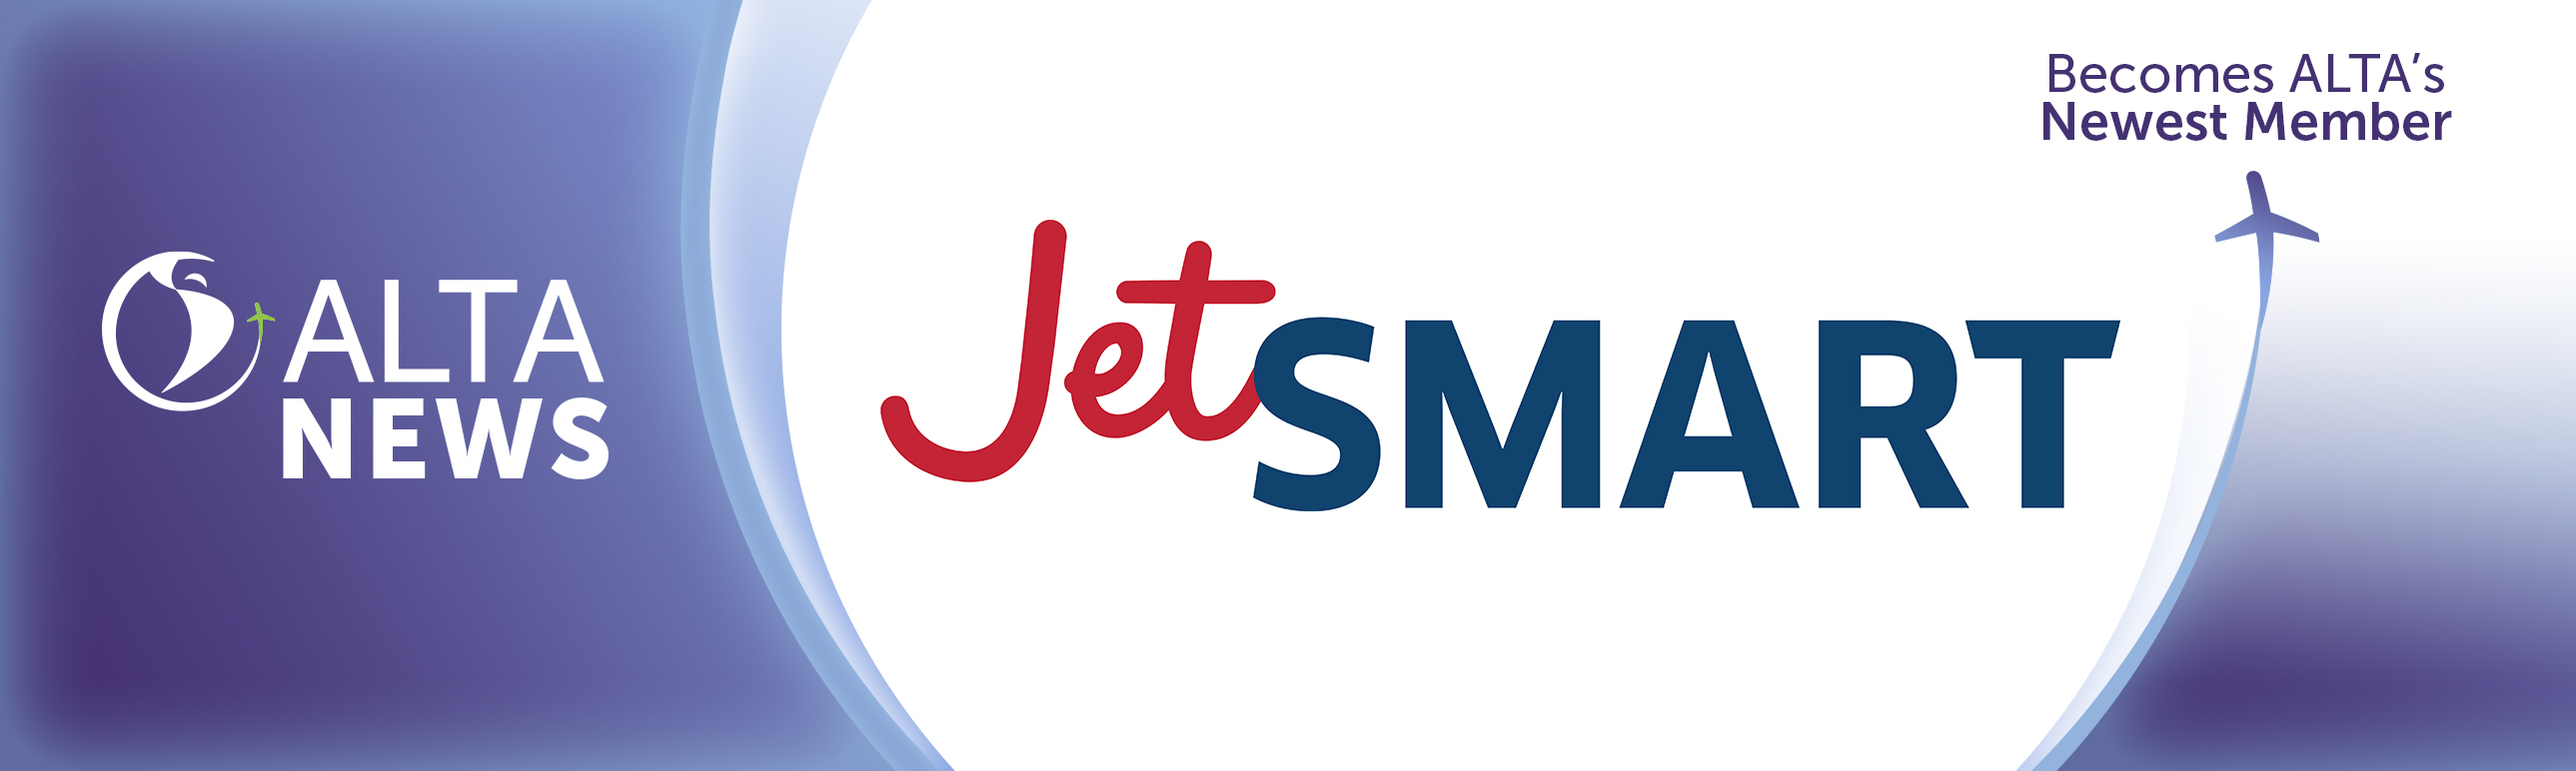 ALTA NEWS - JetSMART, la aerolínea Ultra Low Cost, se integra a ALTA